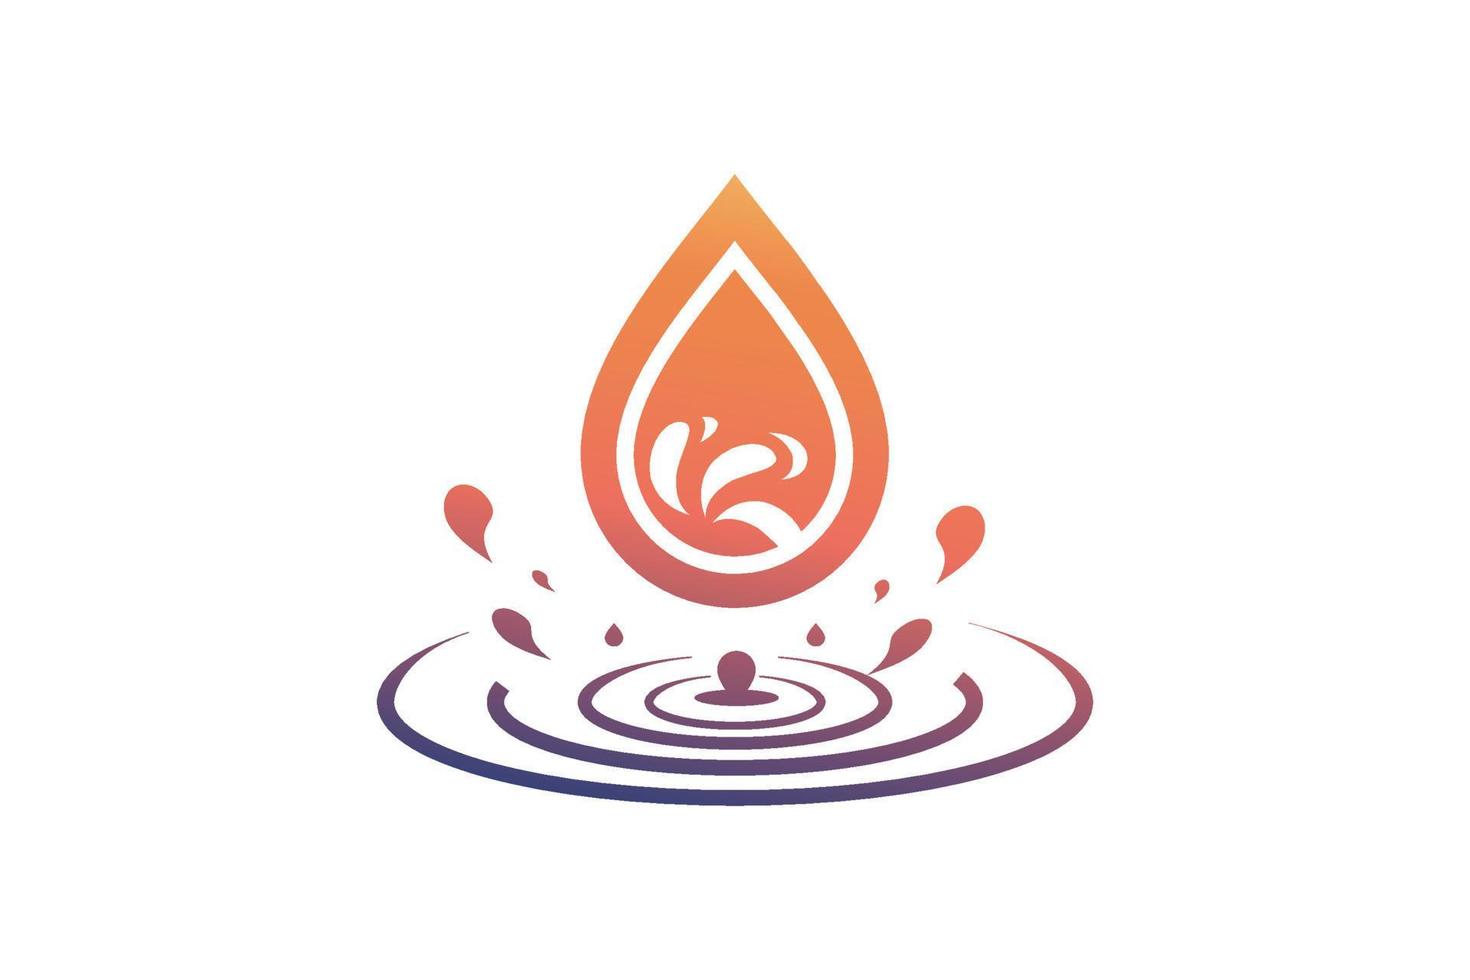 Wassertropfen-Symbol für App oder Website vektor